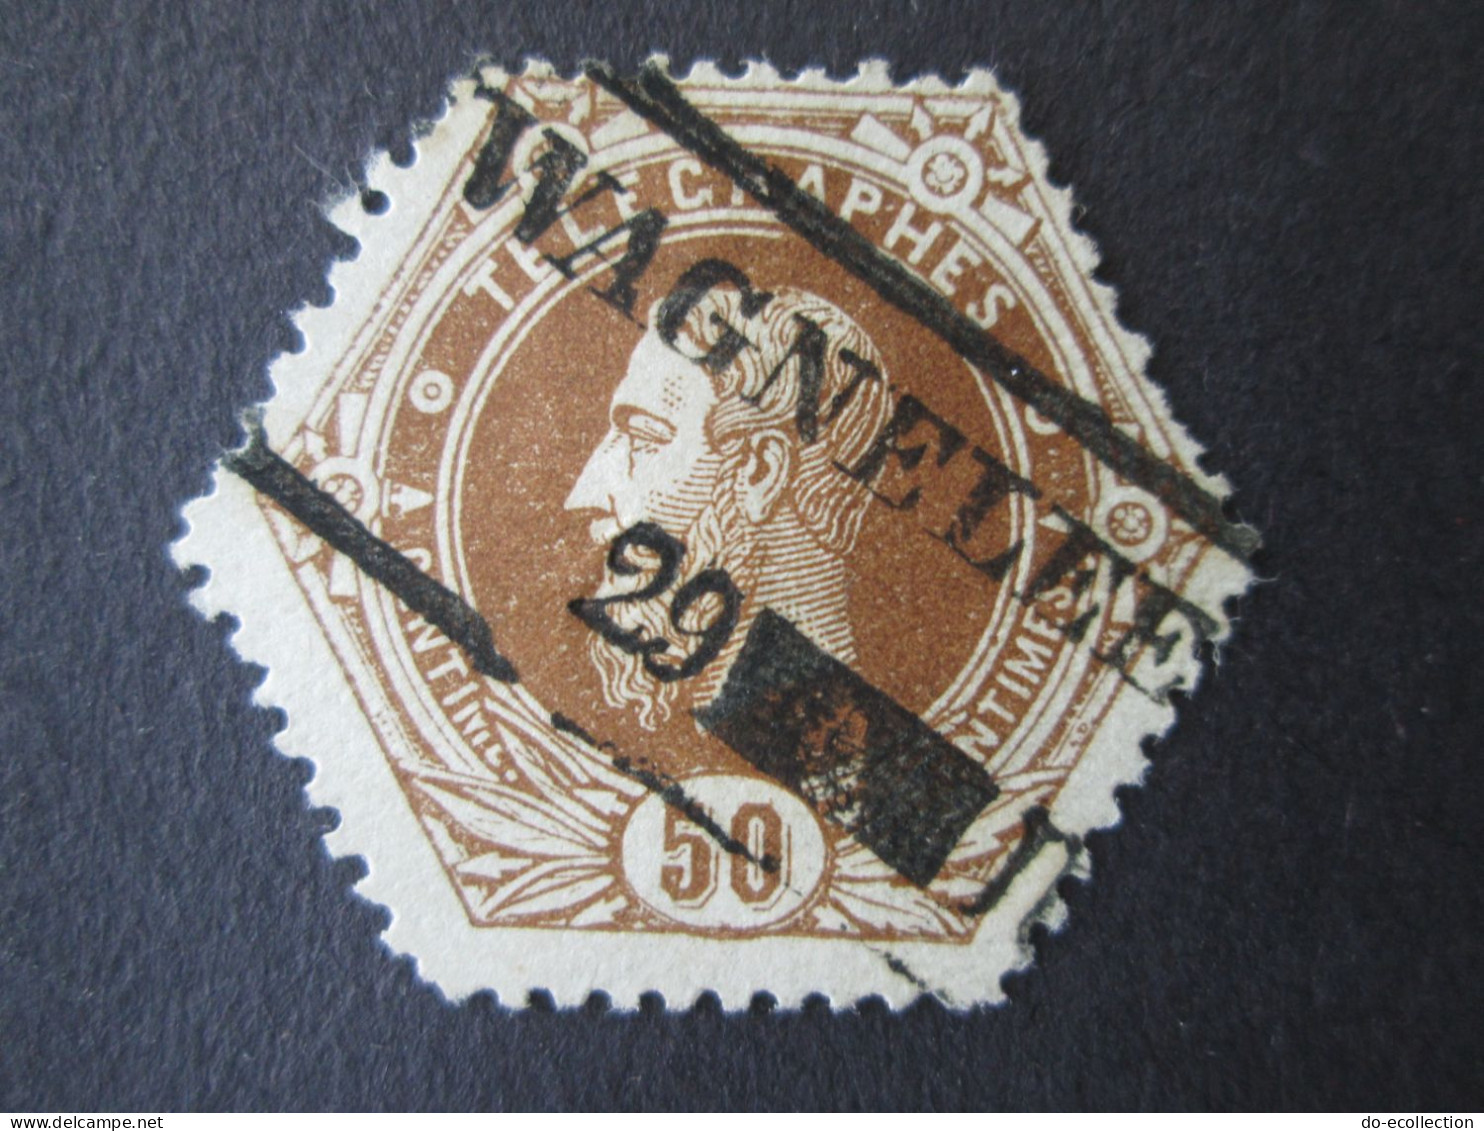 BELGIQUE Timbre Télégraphe 1871 50c WAGNELEE Leopold II Belgie Belgium Timbre Stamp - Sellos Telégrafos [TG]